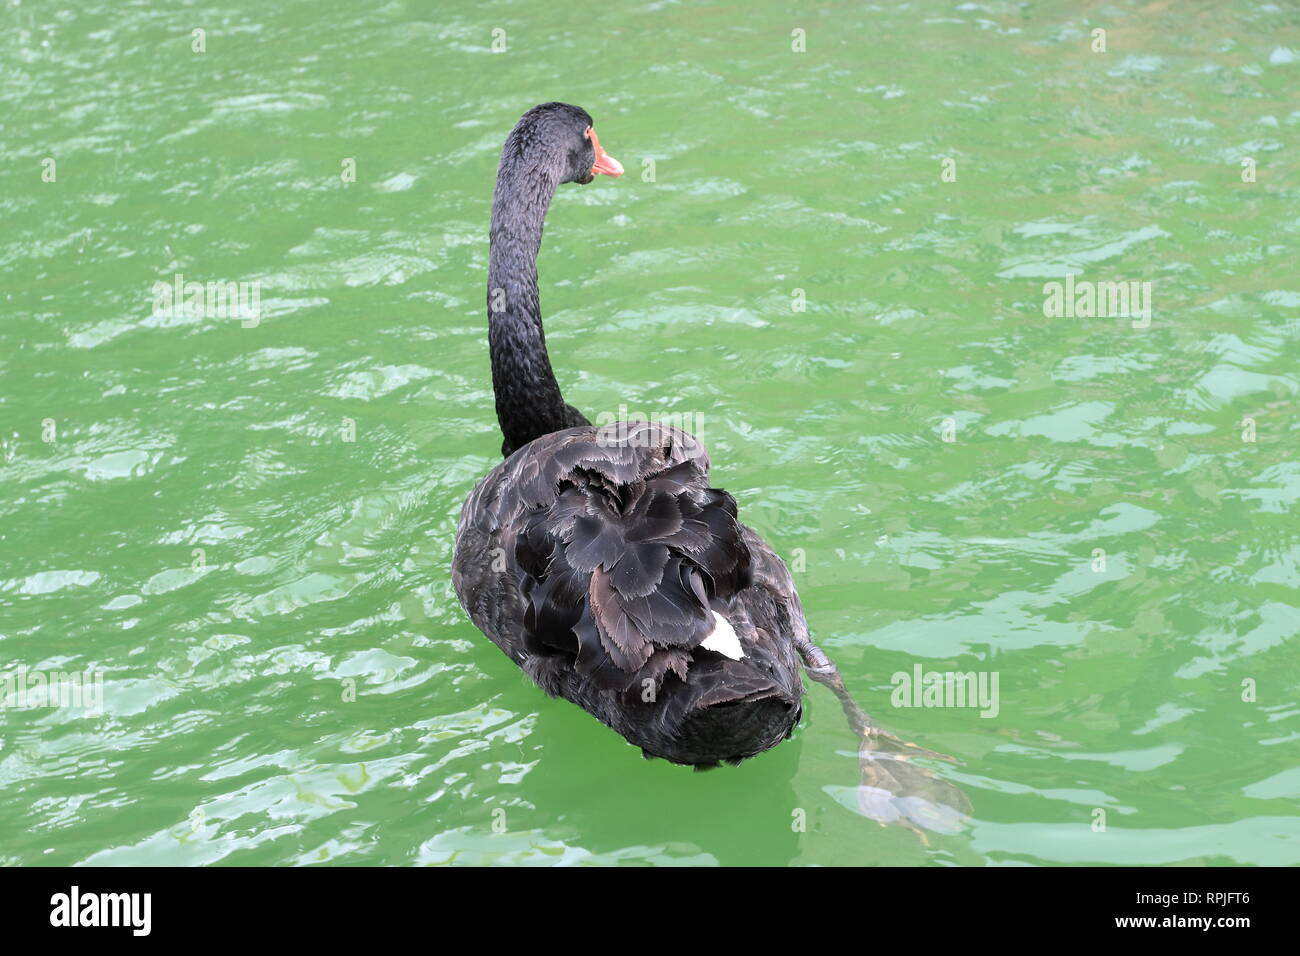 Vista posterior de un cisne negro en un tanque de agua Foto de stock